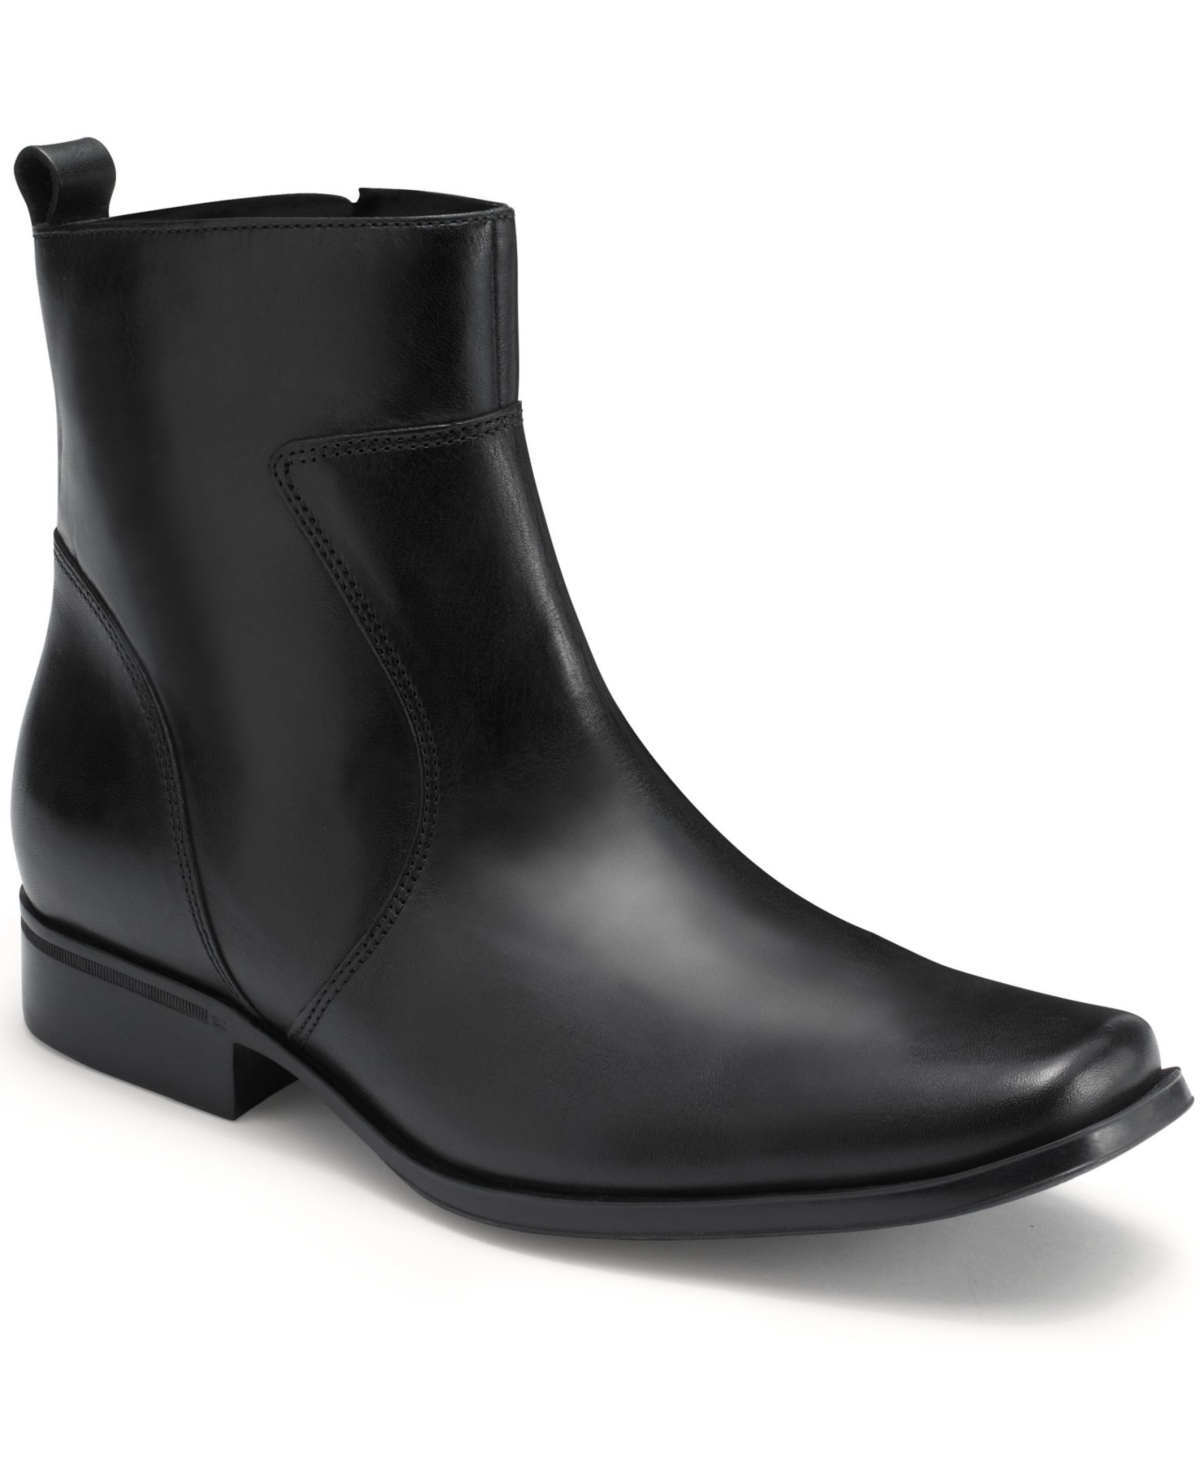 Men's Toloni Boots - Black